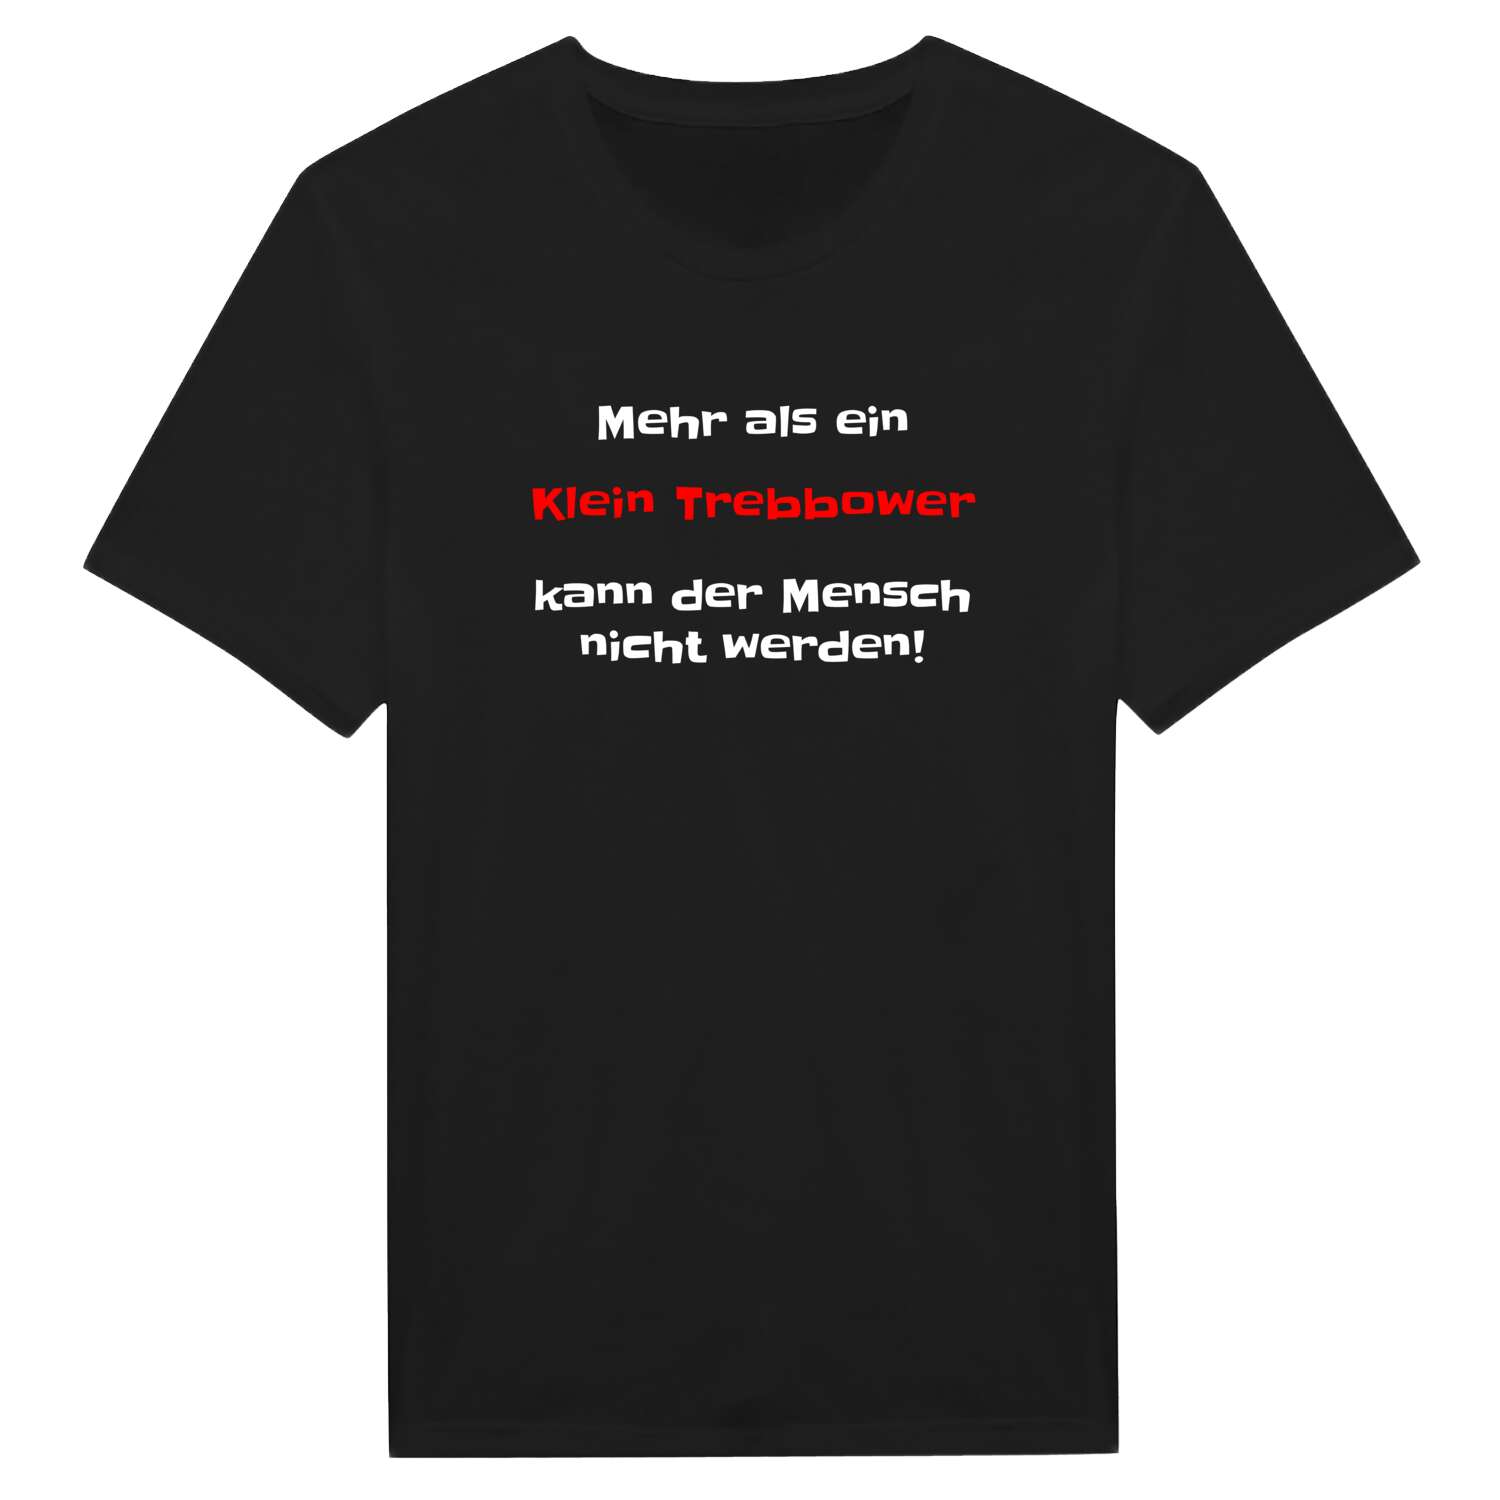 Klein Trebbow T-Shirt »Mehr als ein«